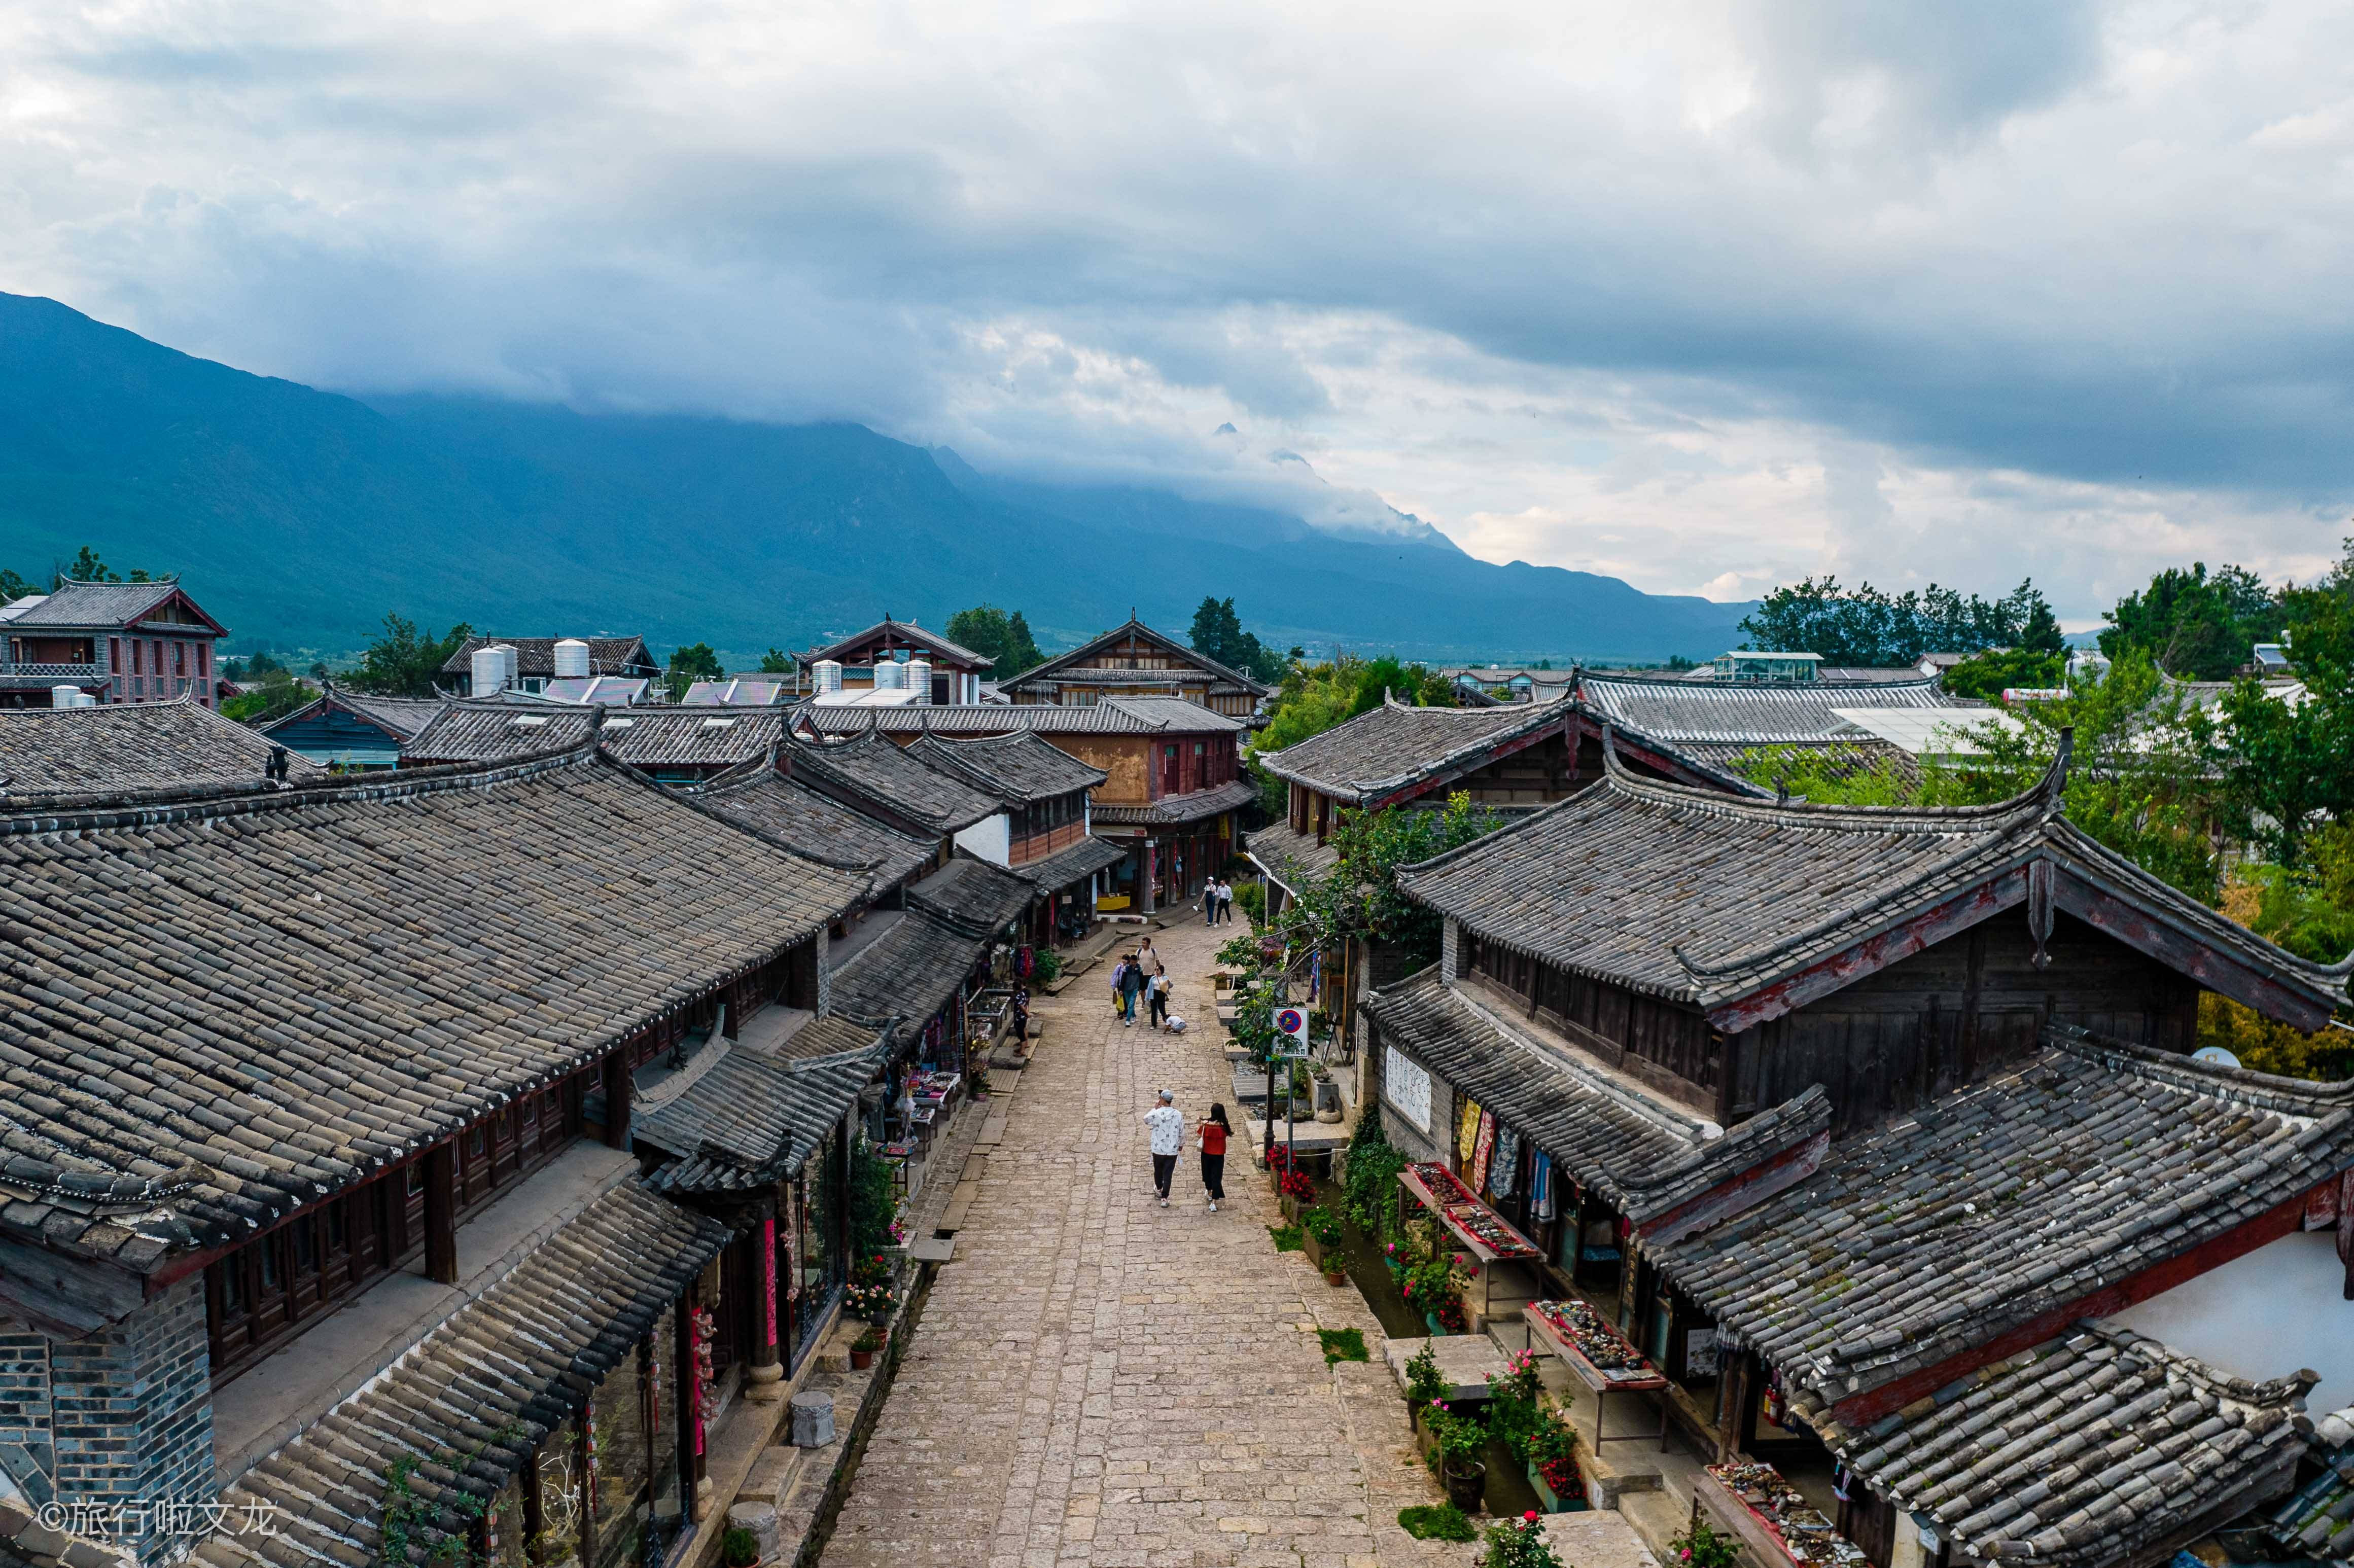 国庆假期去丽江旅游,还是推荐白沙古镇,没有商业氛围文艺十足